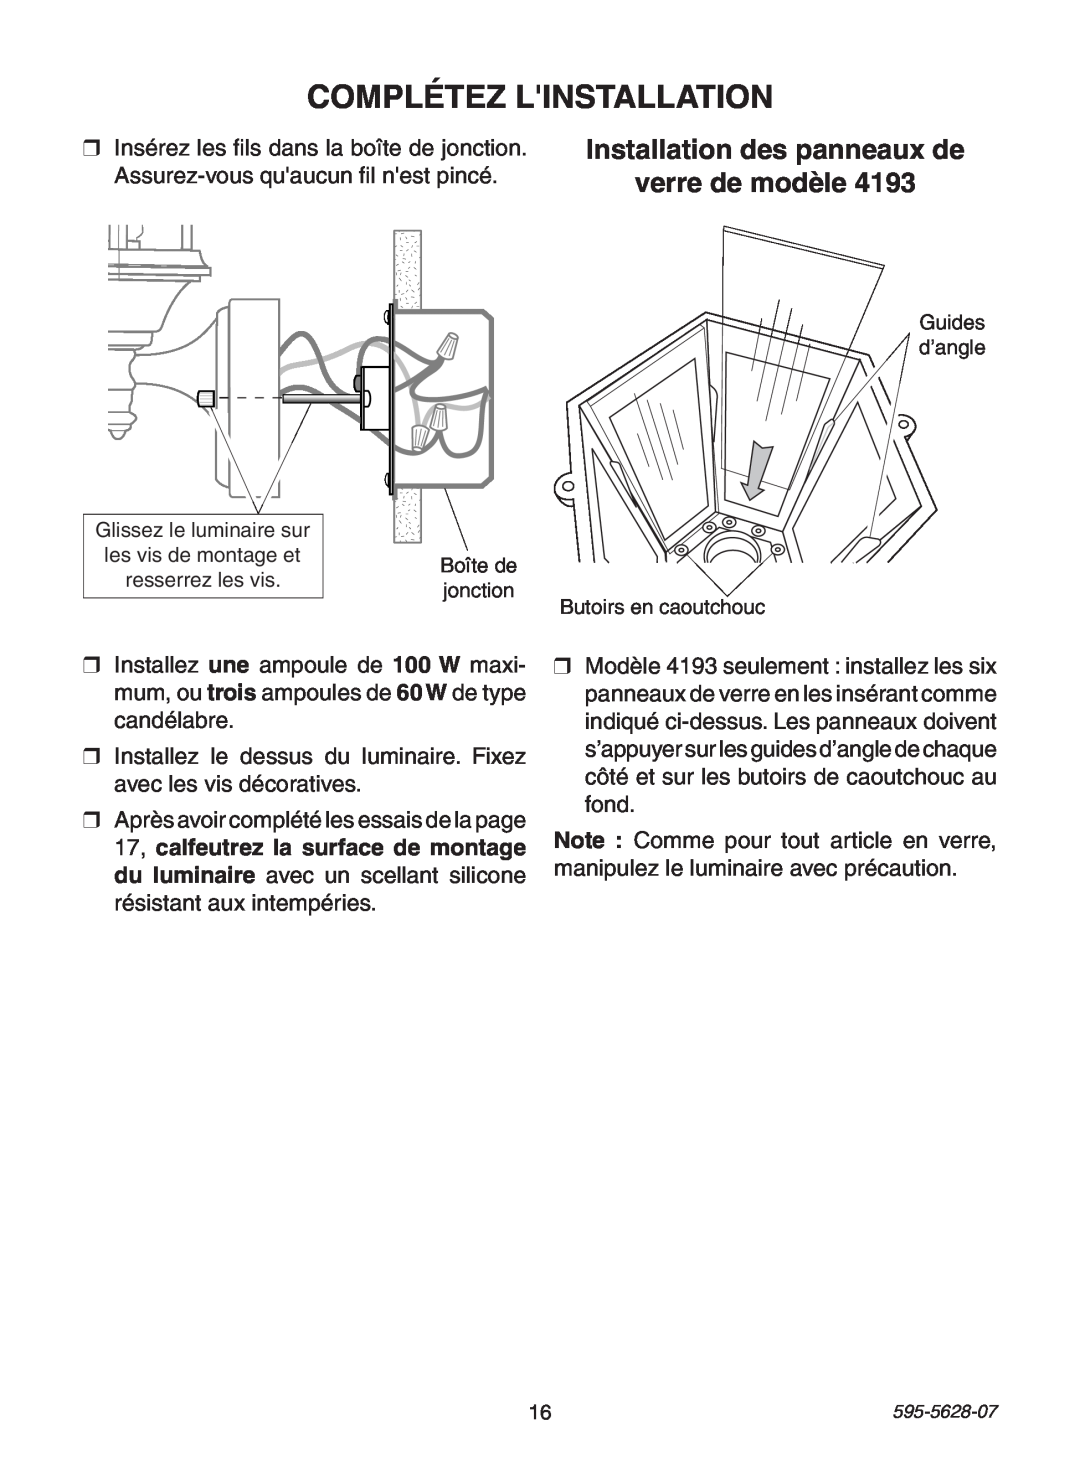 Heath Zenith SL-4190 manual Complétez Linstallation, Installation des panneaux de verre de modèle 